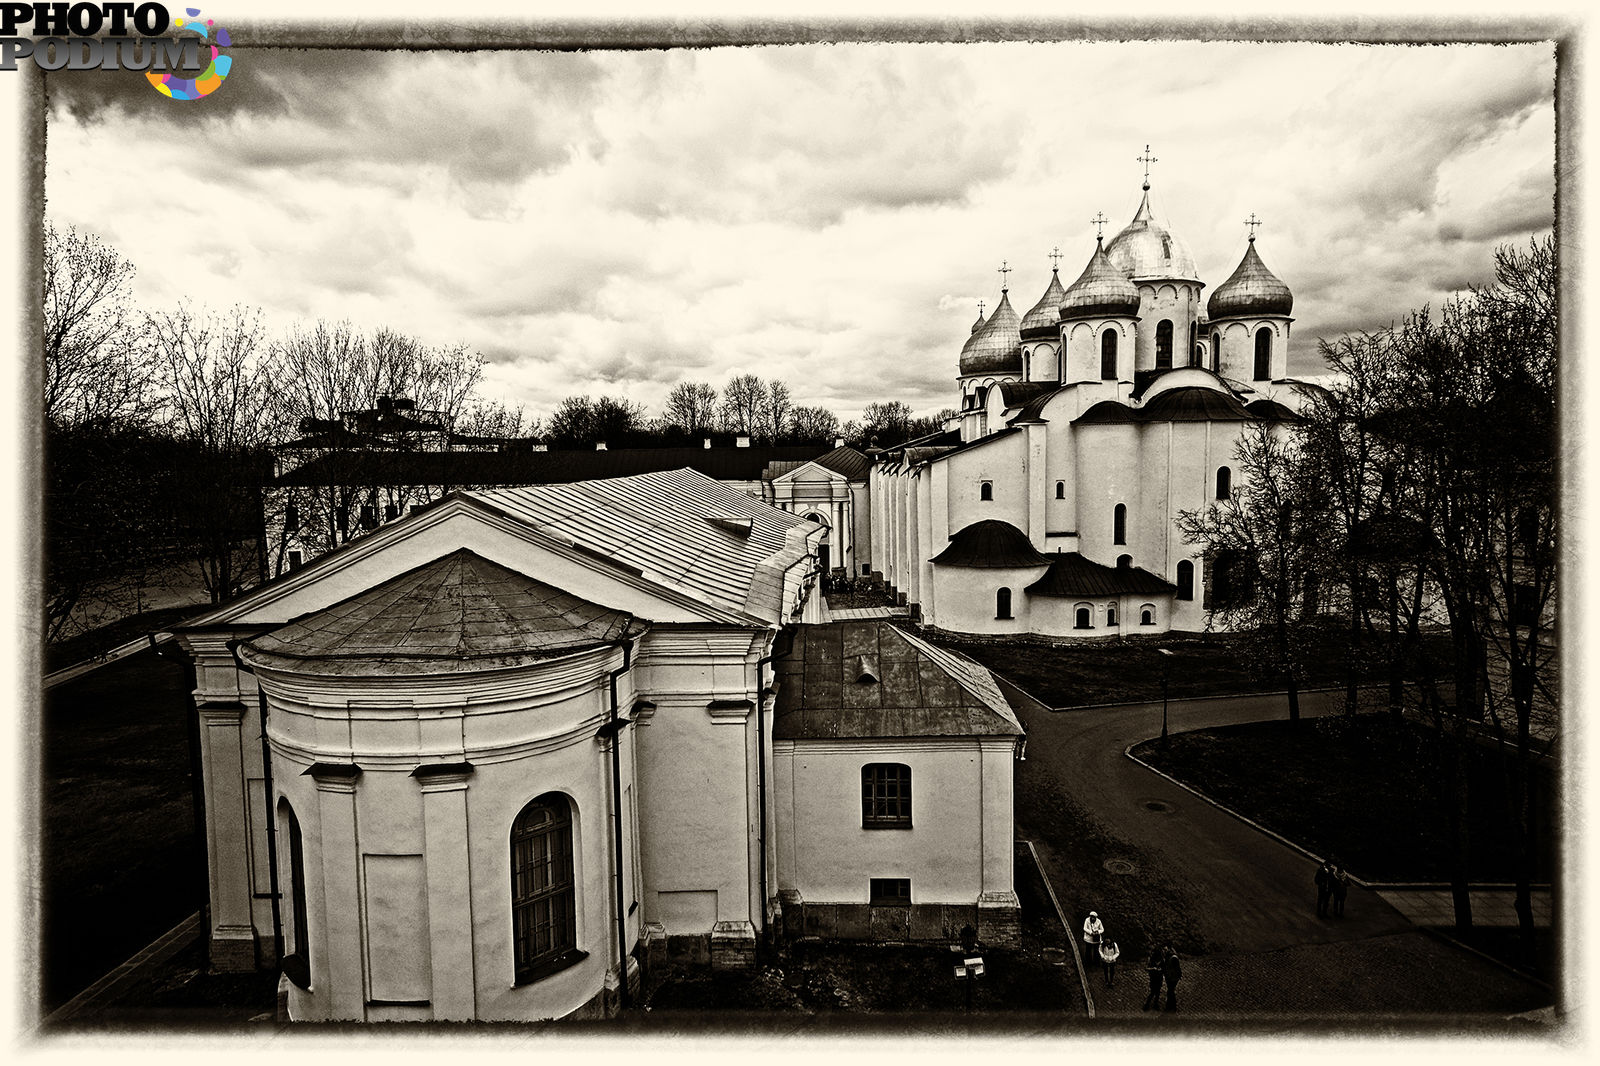 Софийский собор в Великом Новгороде фото 19 века